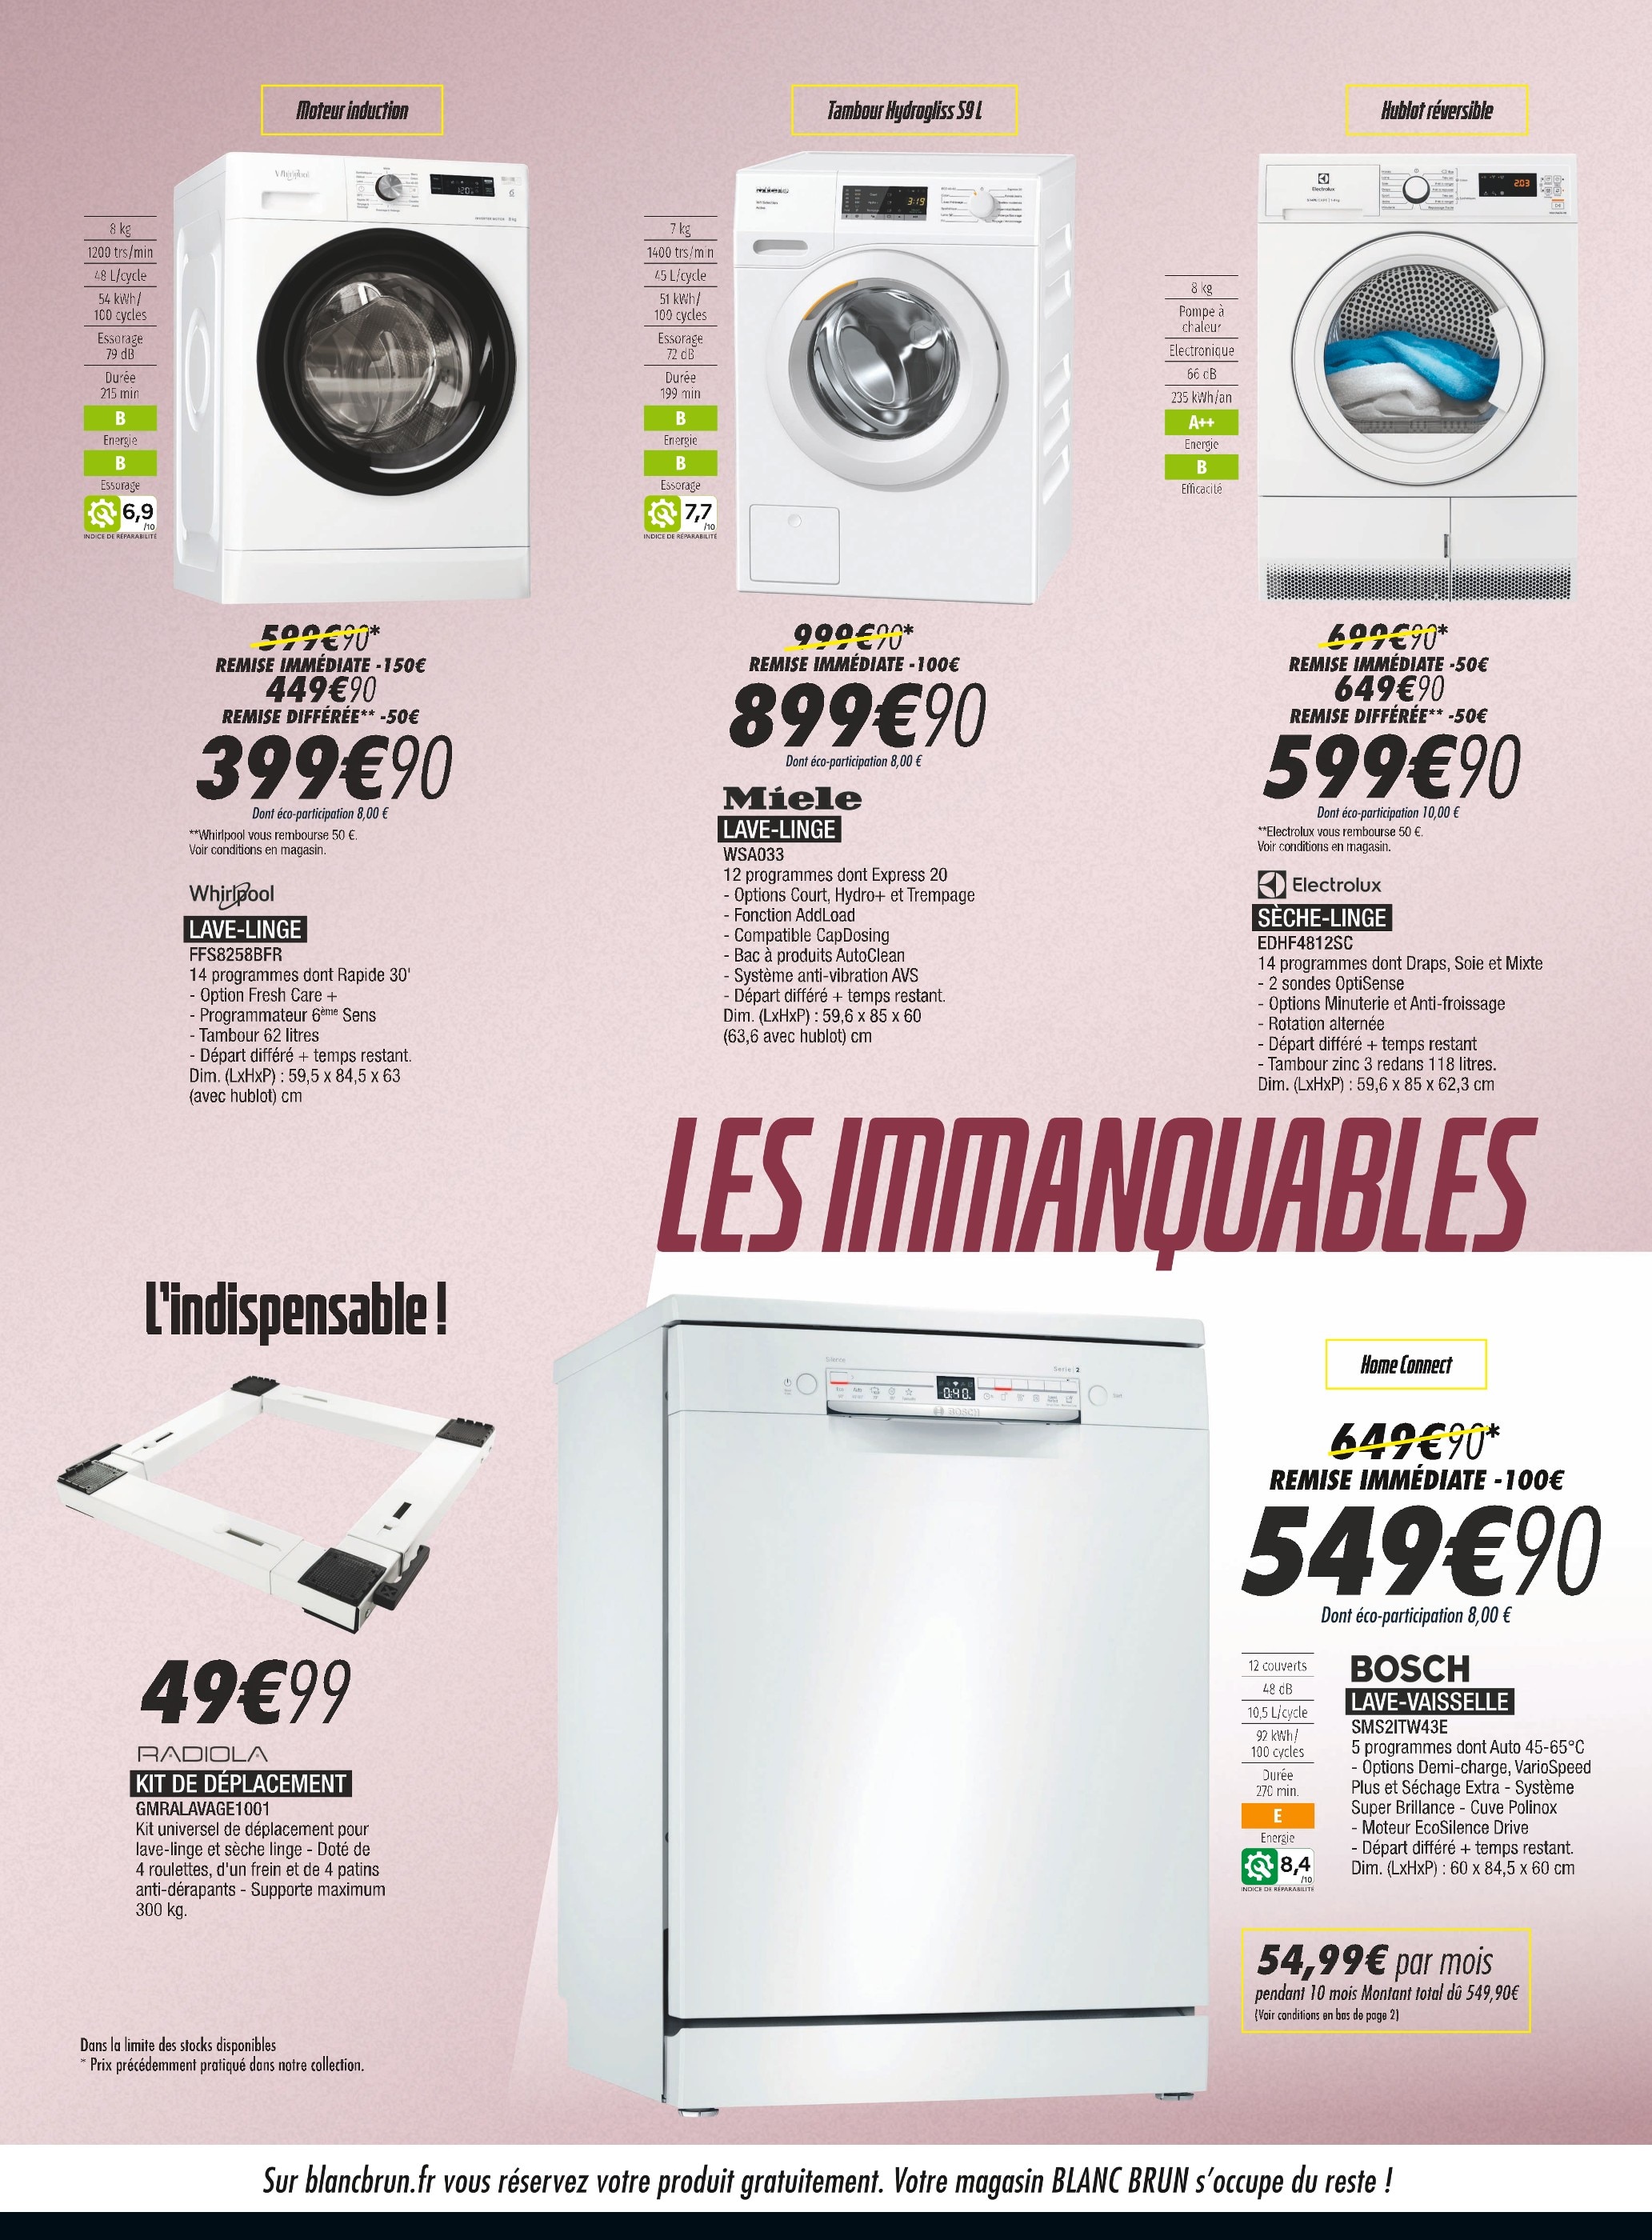 Lave-Linge Conforama ᐅ Promos et prix dans le catalogue de la semaine